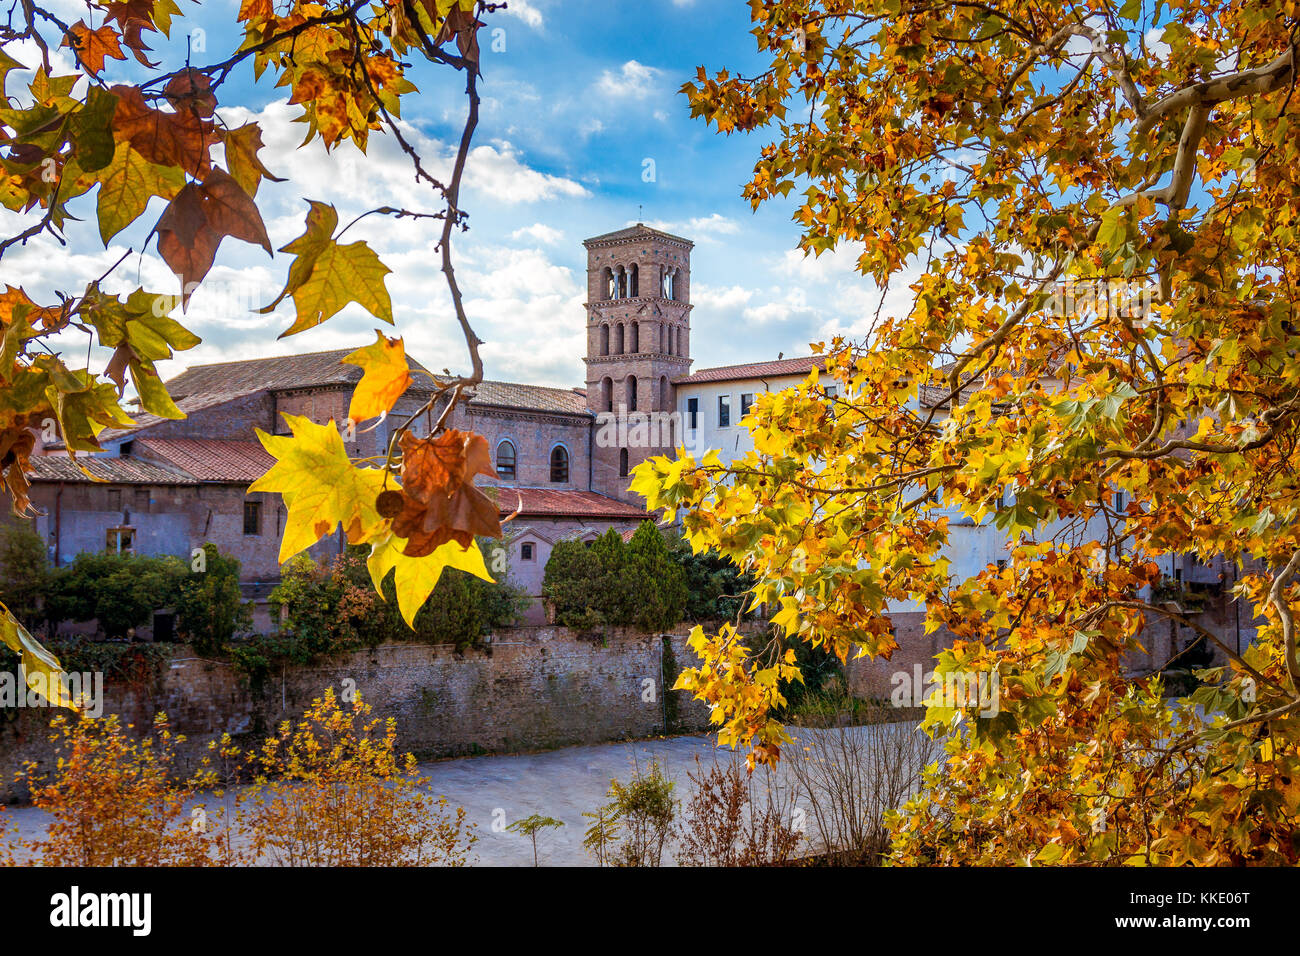 Belle photo de Rome, Italie avec le feuillage jaune en automne Banque D'Images